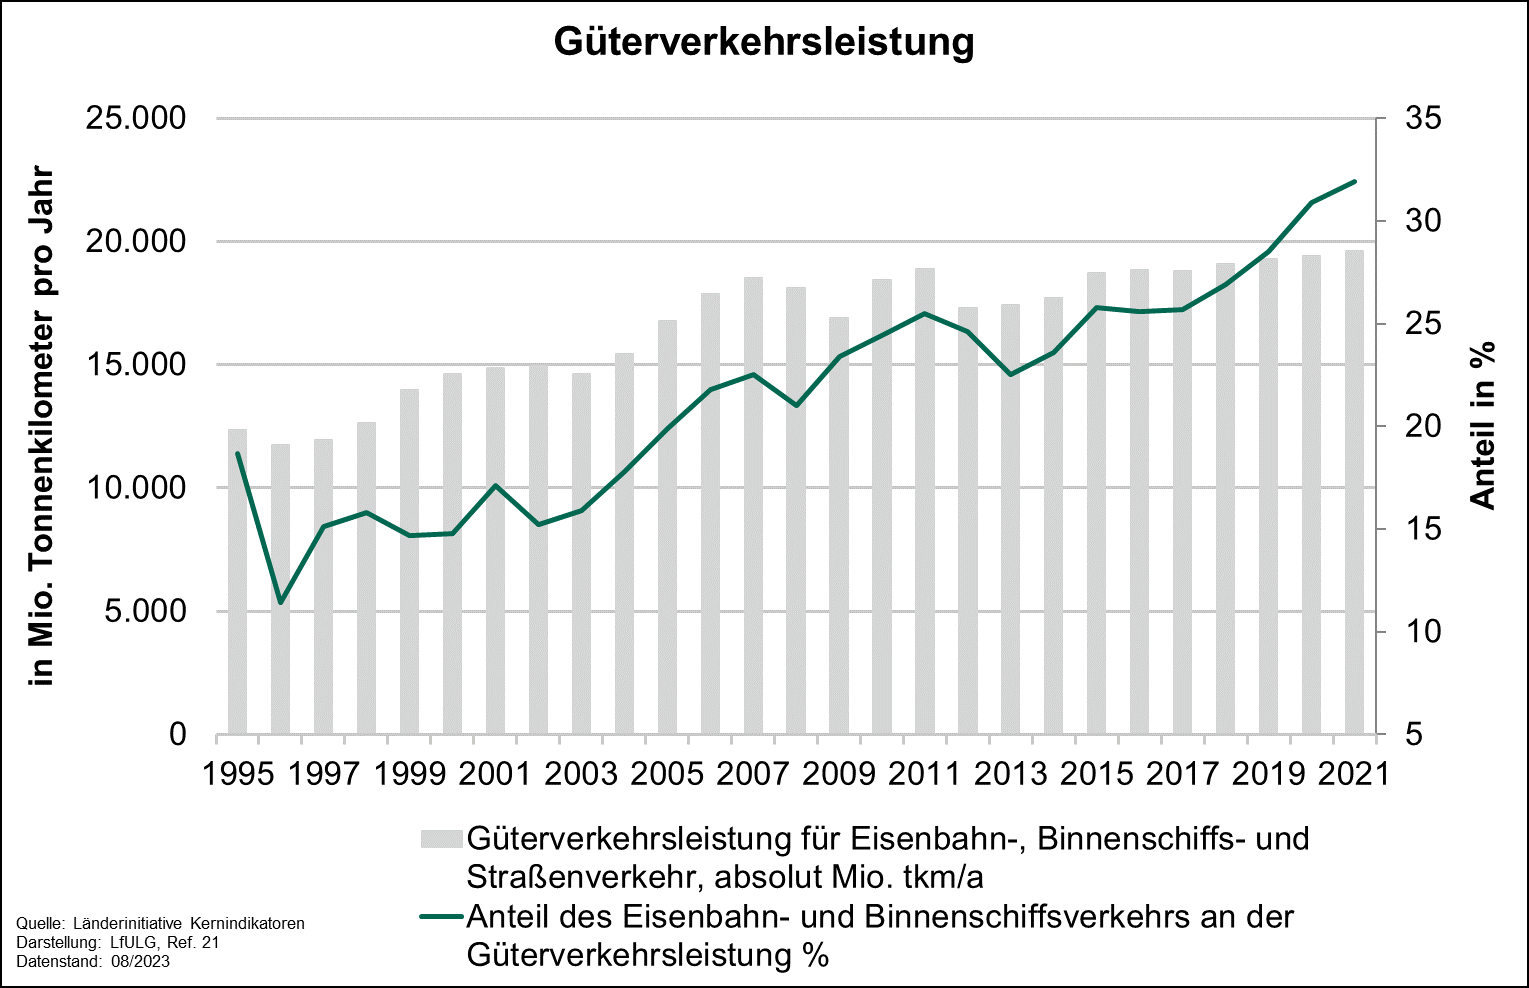 Die Grafik zeigt die Entwicklung des Indikators Güterverkehrsleistung von 1995 bis 2021. Der Parameter Gesamtgüterverkehrsleistung zeigt über den gesamten Zeitraum eine steigende Tendenz mit diversen Schwankungen. 